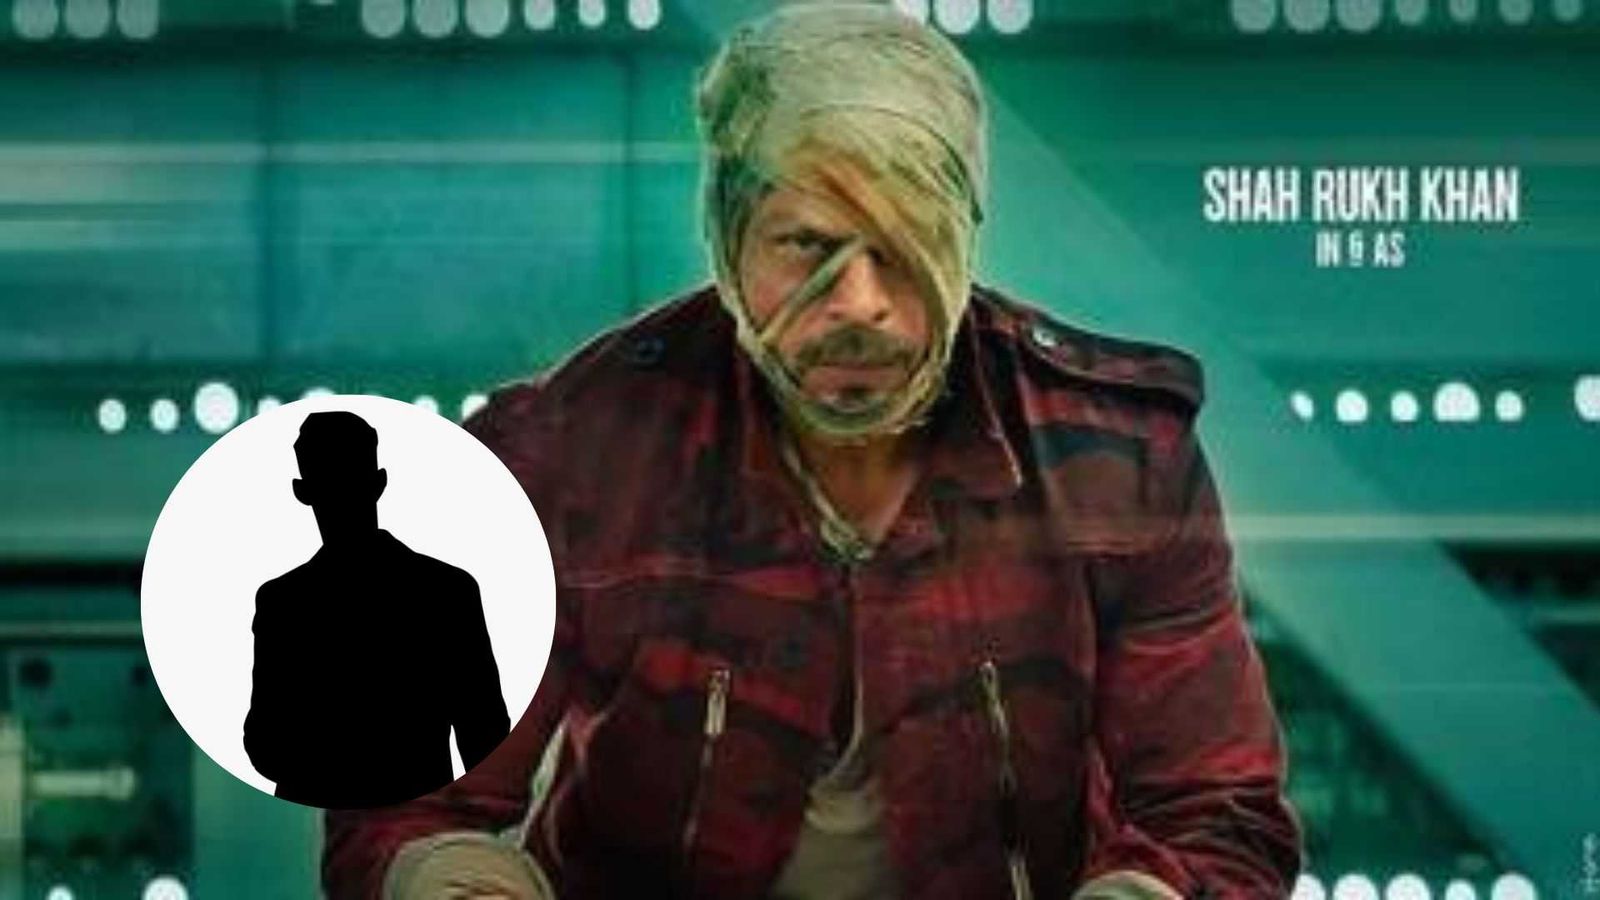 शाहरुख खान की फिल्म जवान में होगा इस बड़े साउथ स्टार का कैमियो, खास वजह से फ्री में करेगा काम